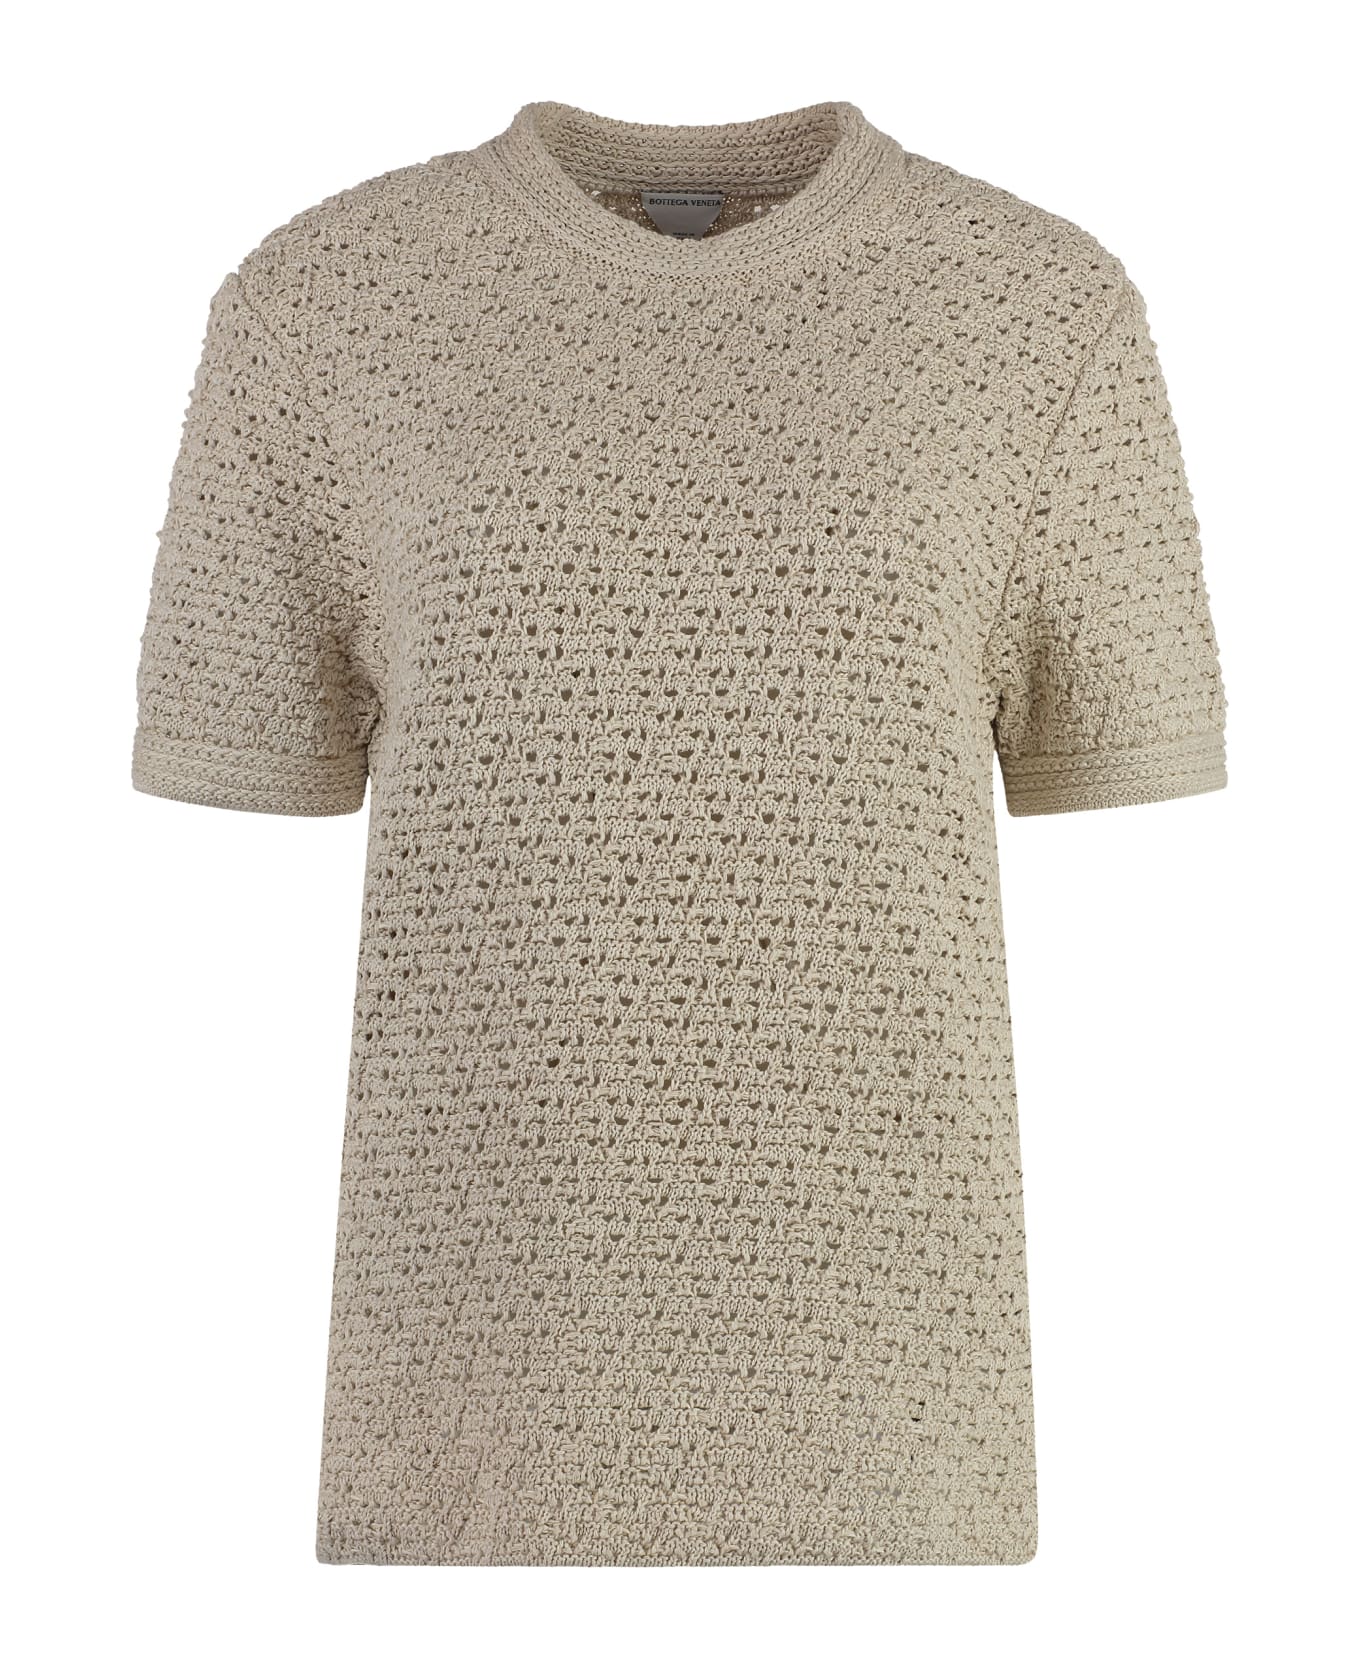 Bottega Veneta Knitted T-shirt - Beige